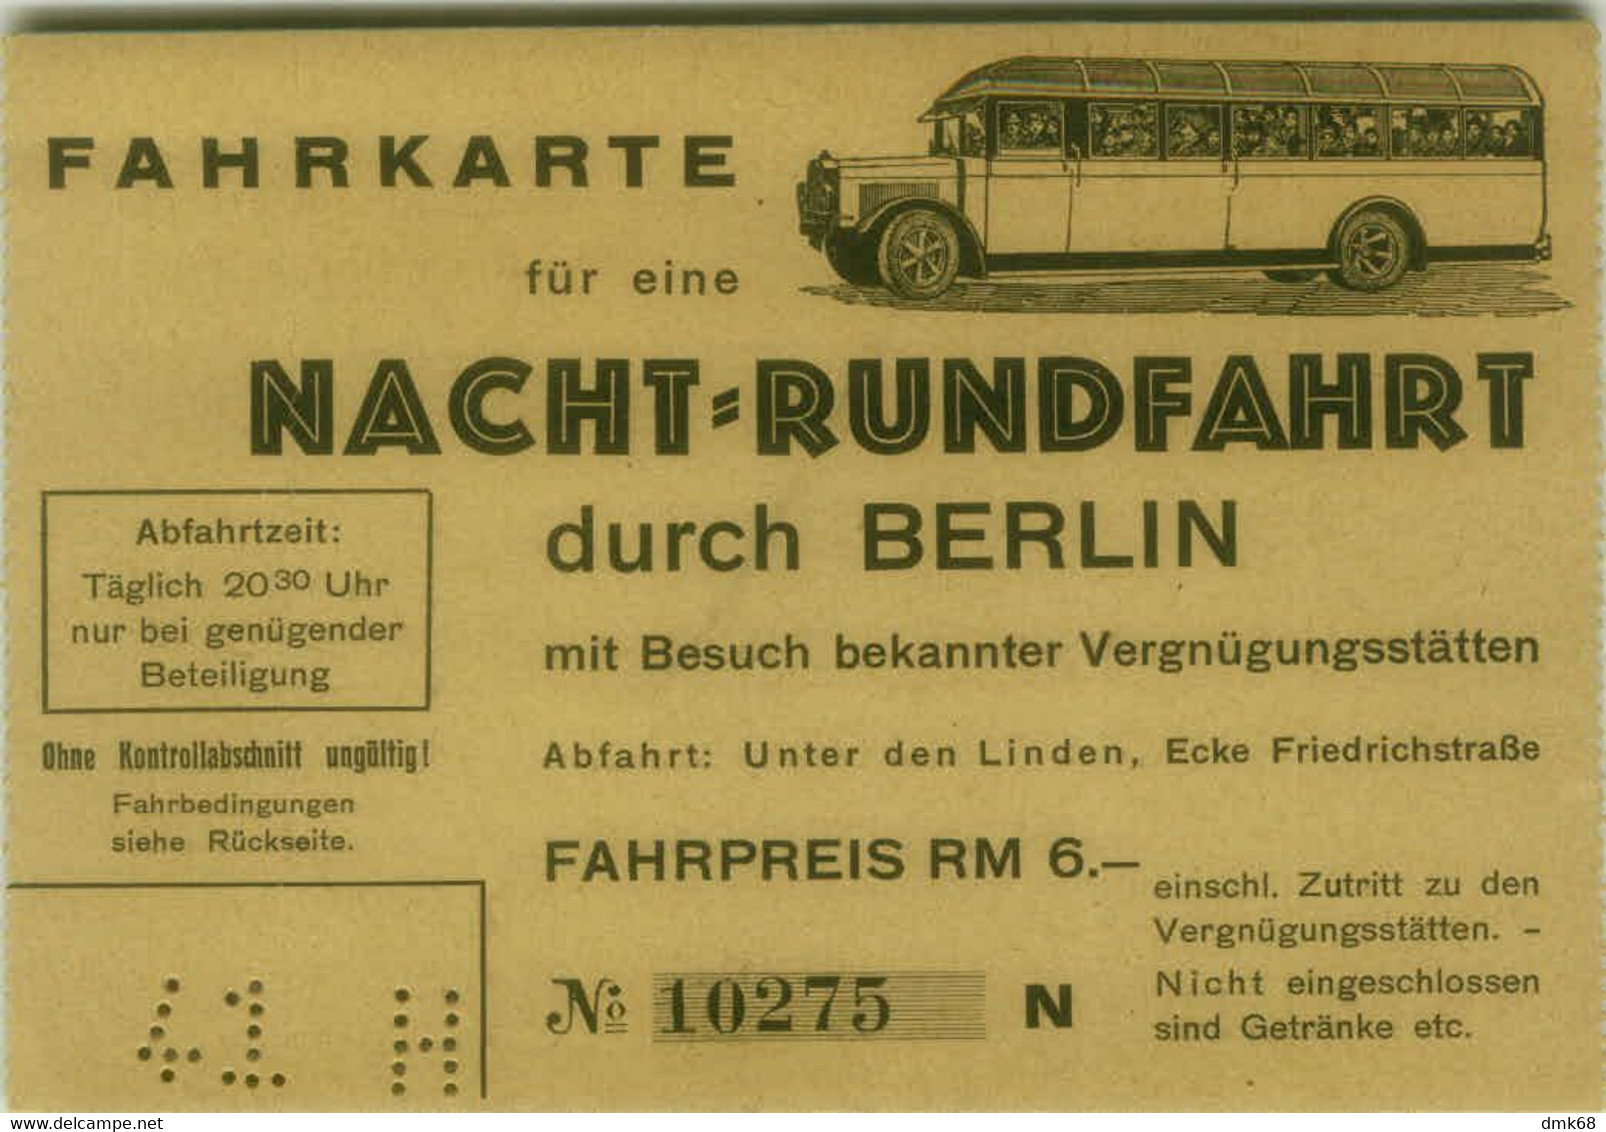 GERMANY - OLD BUS TICKET / FAHRKARTE FÜR EINE NACHT RUNDFAHRT DURCH BERLIN  ( BG10128) - Europe